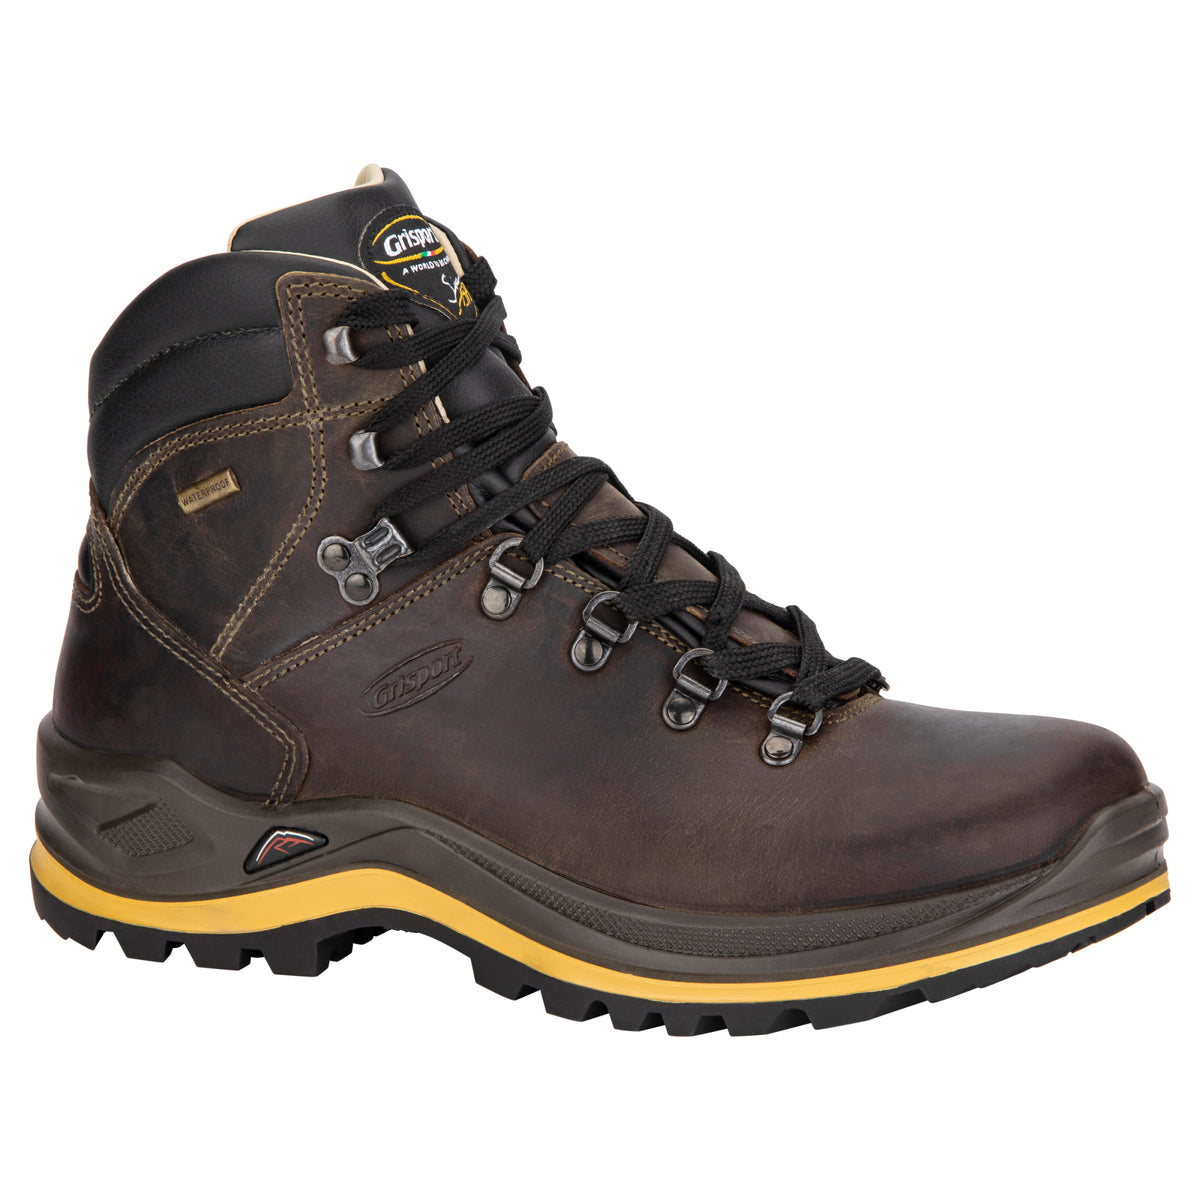 Grisport Classic Mid Waterproof Hiking Boots (Dark Chocolate) – Allgoods | Sicherheitsschuhe